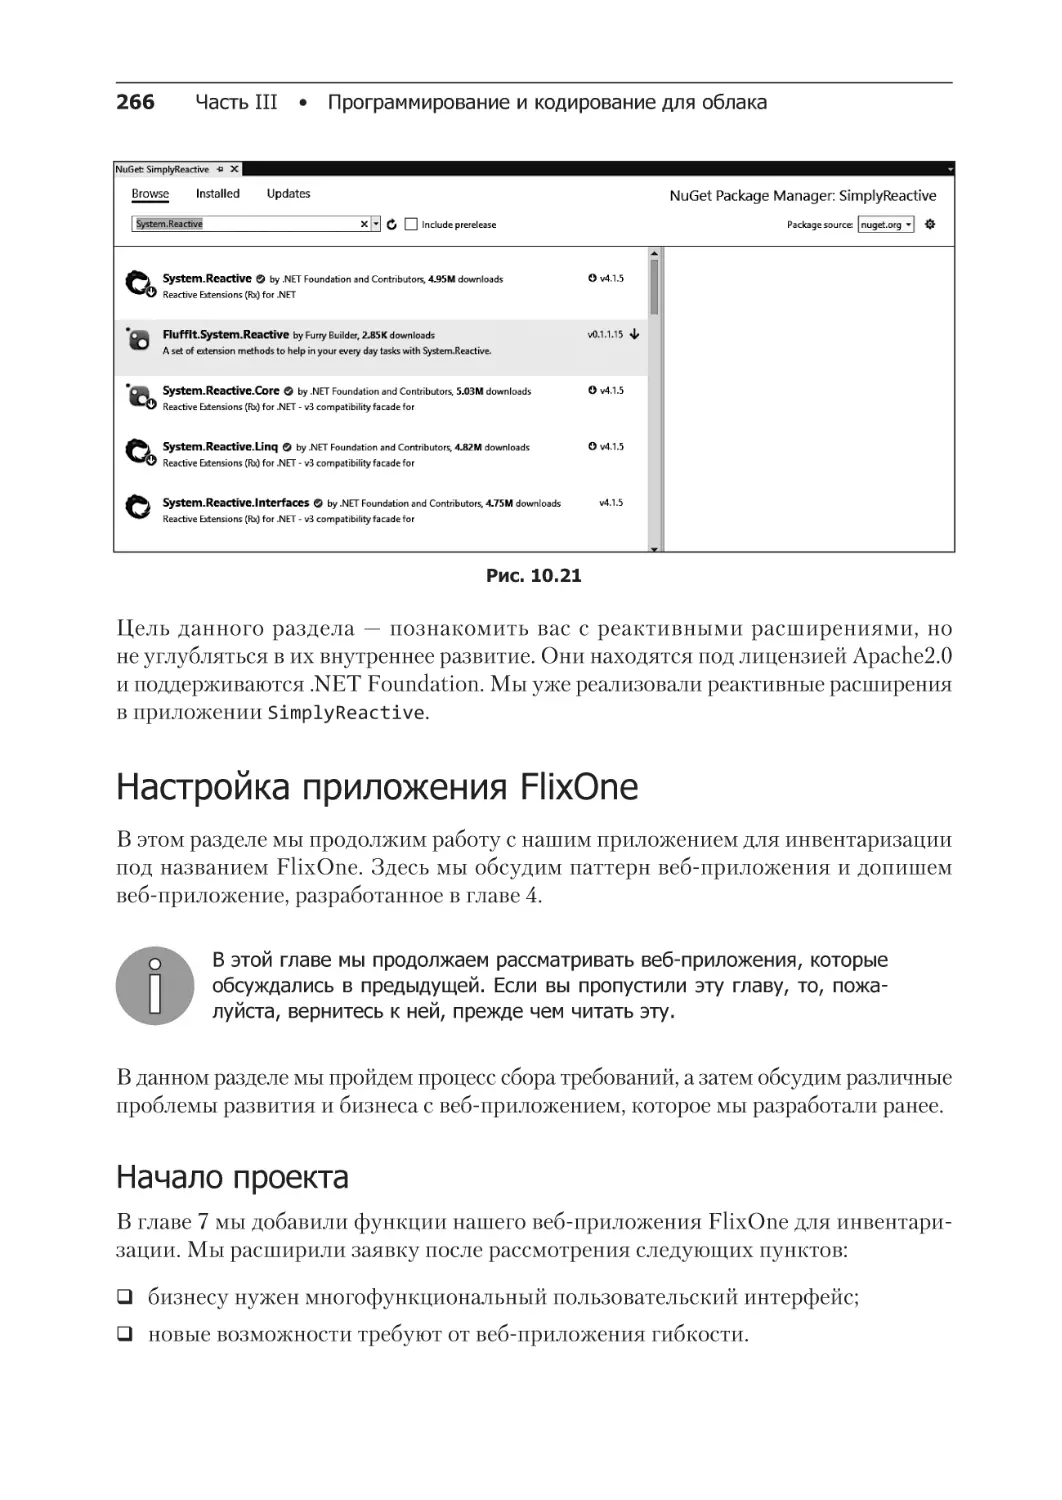 Настройка приложения FlixOne
Начало проекта